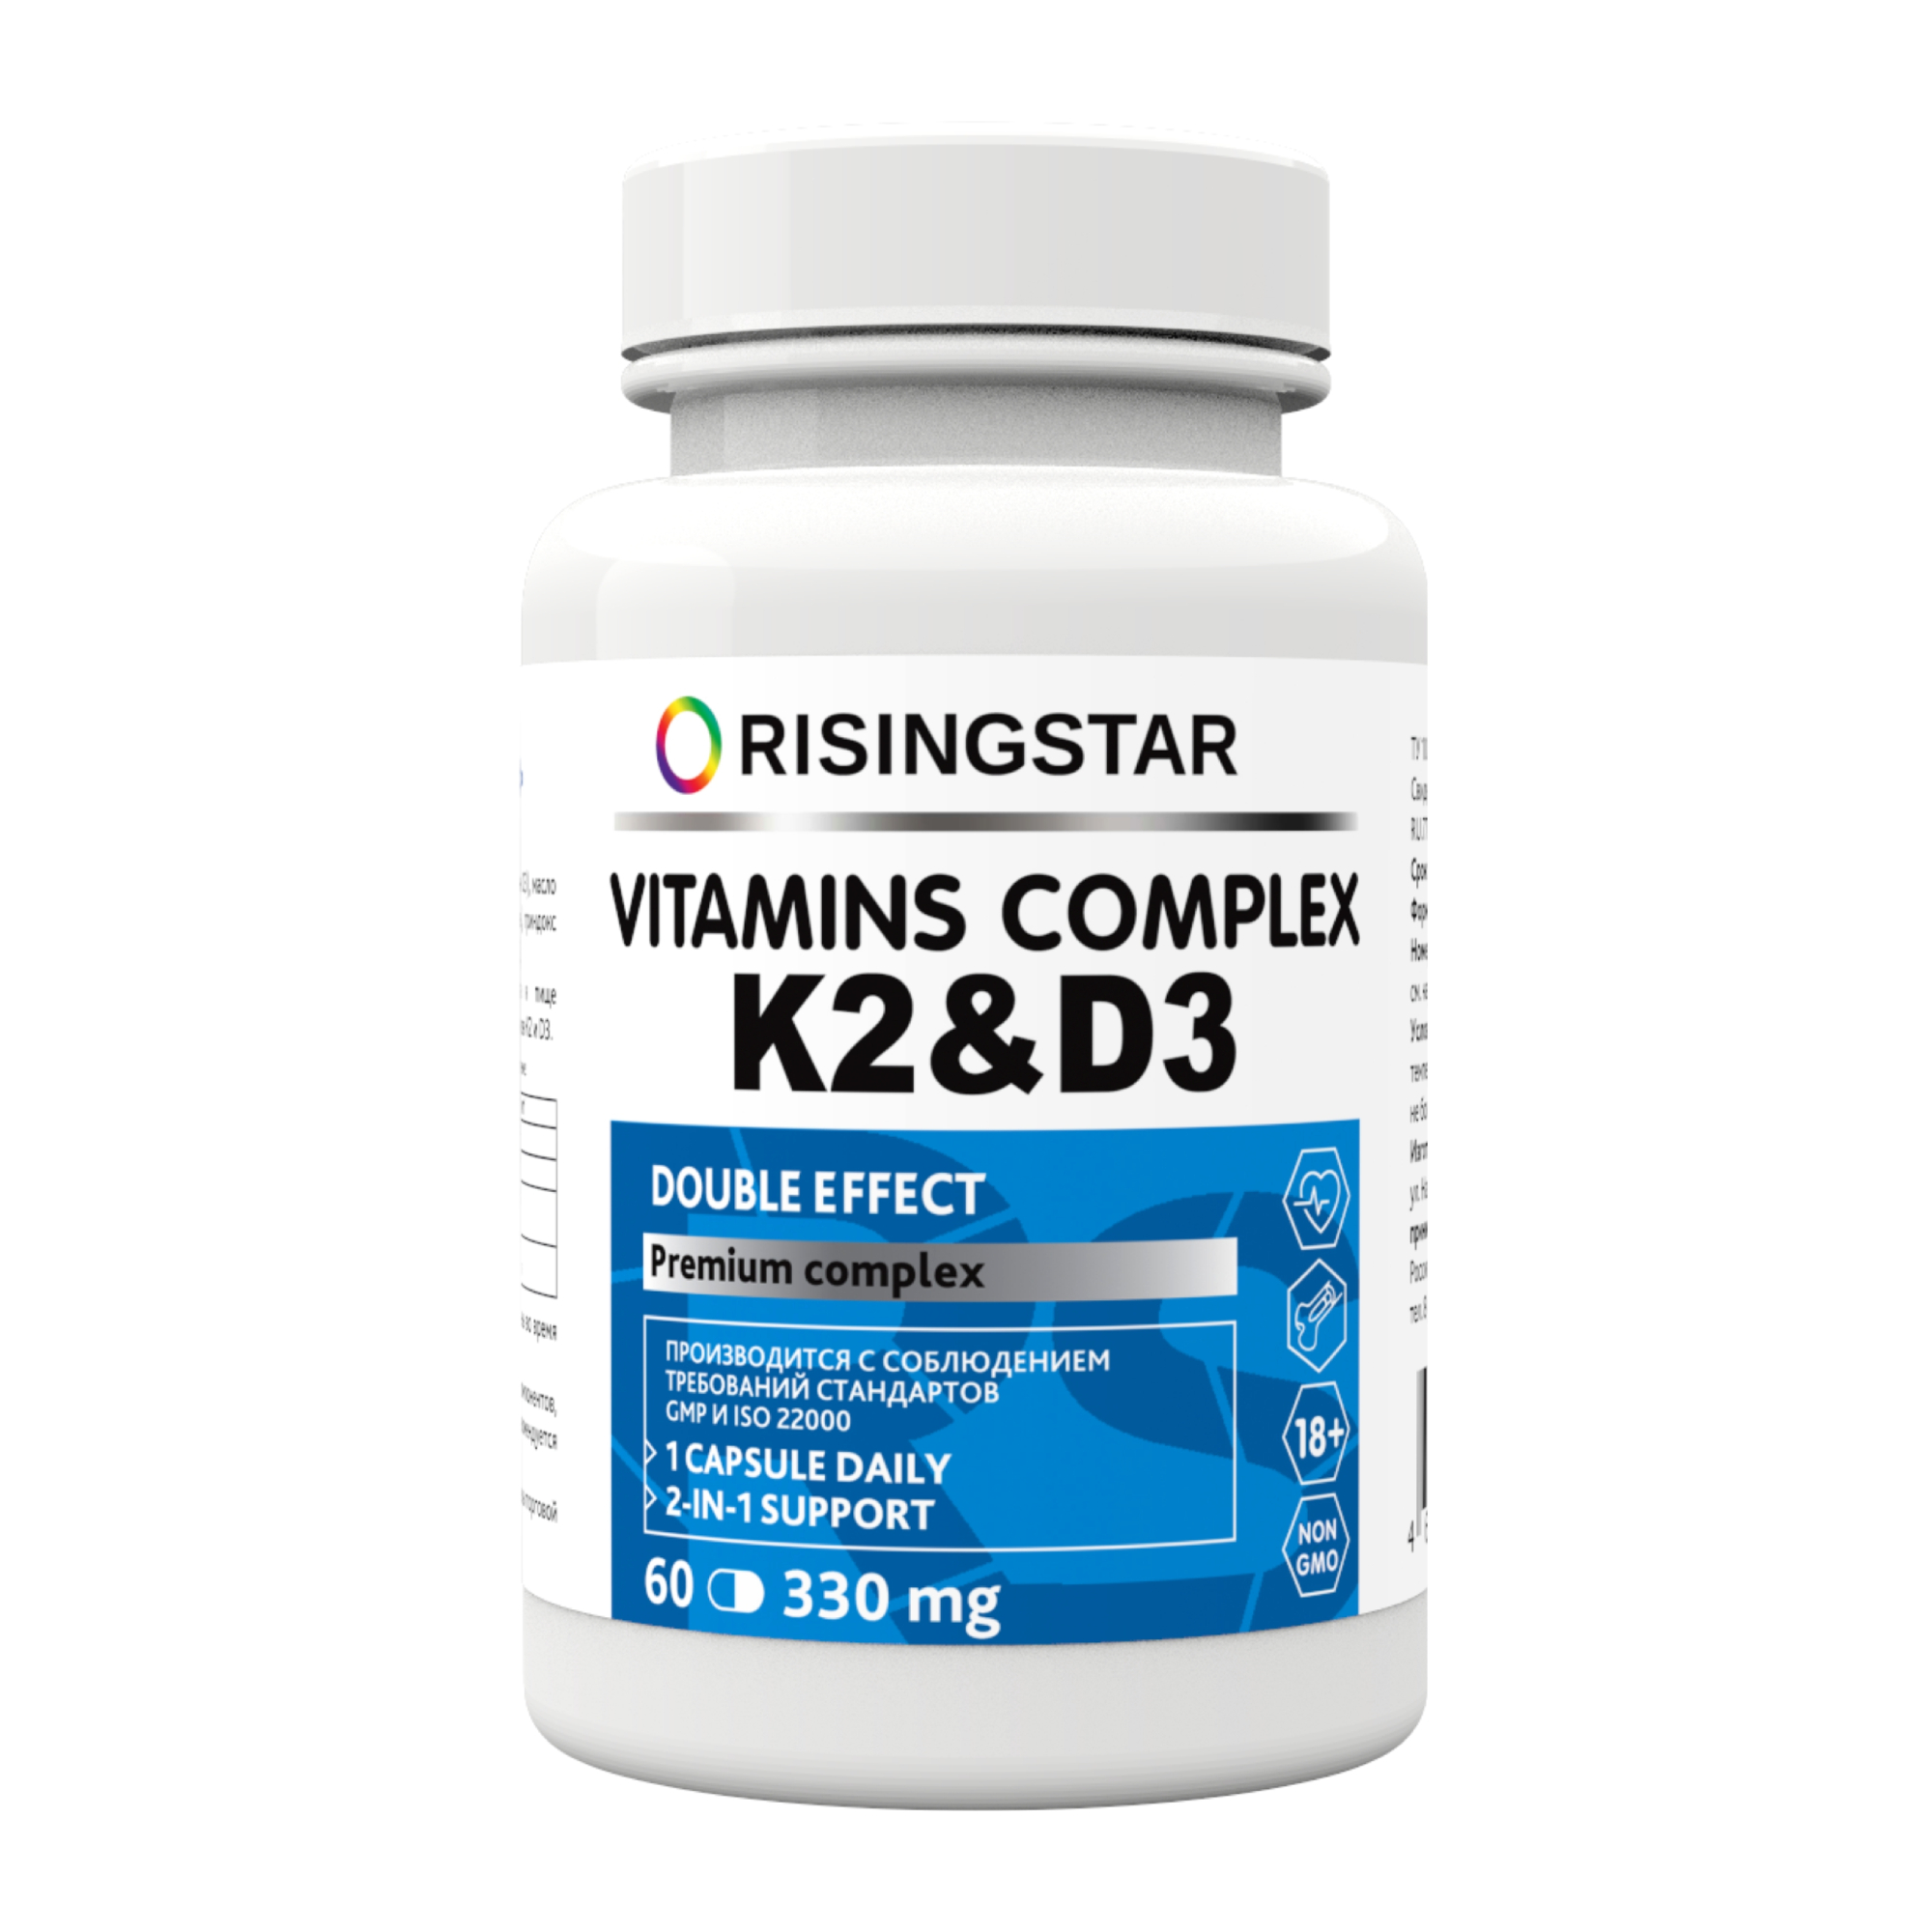 БАД Risingstar комплекс витаминов K2 и D3 60 таблеток, 60 г комплекс витаминов k2